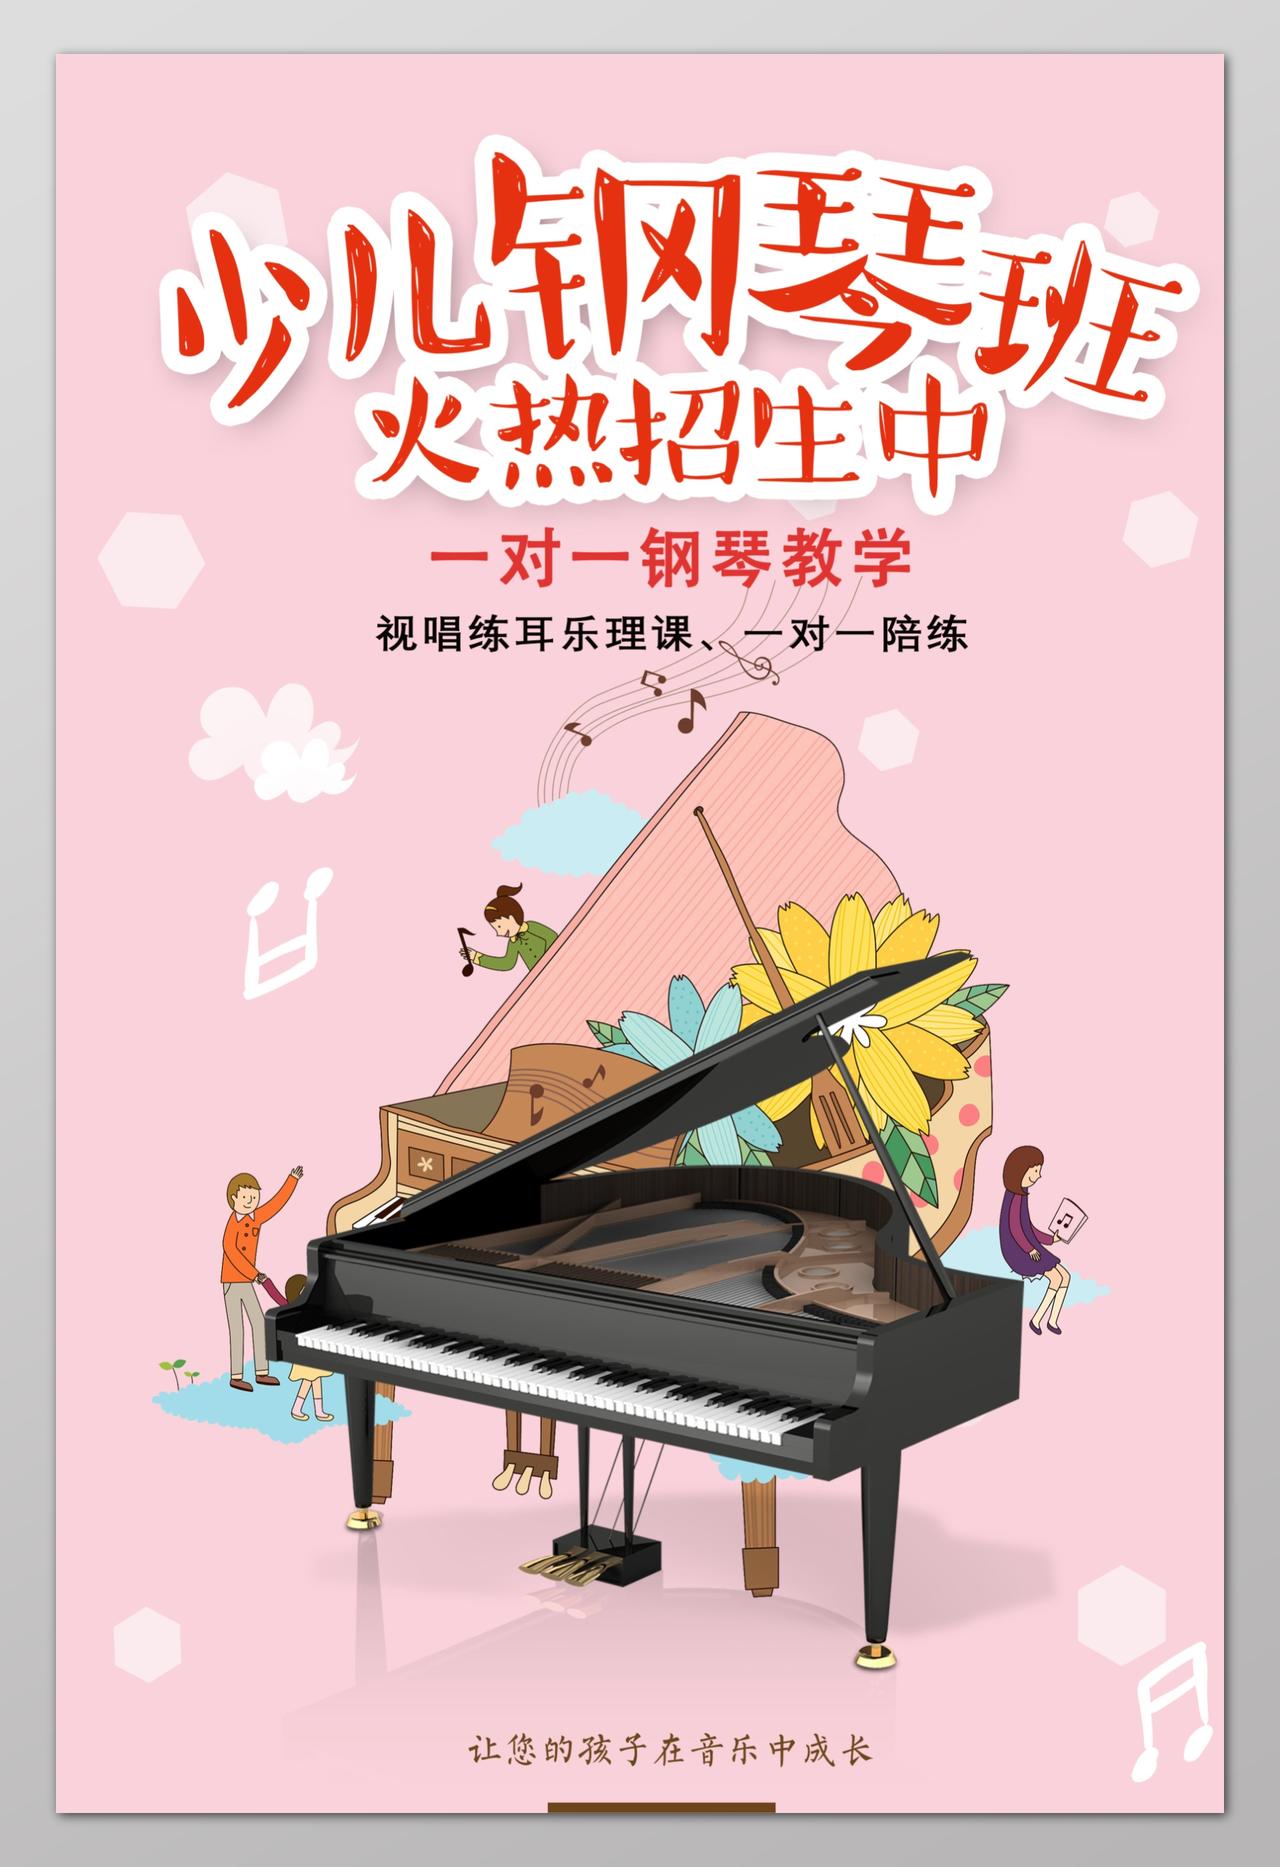 小儿钢琴班火热招生中一对一钢琴教学钢琴招生钢琴培训海报设计